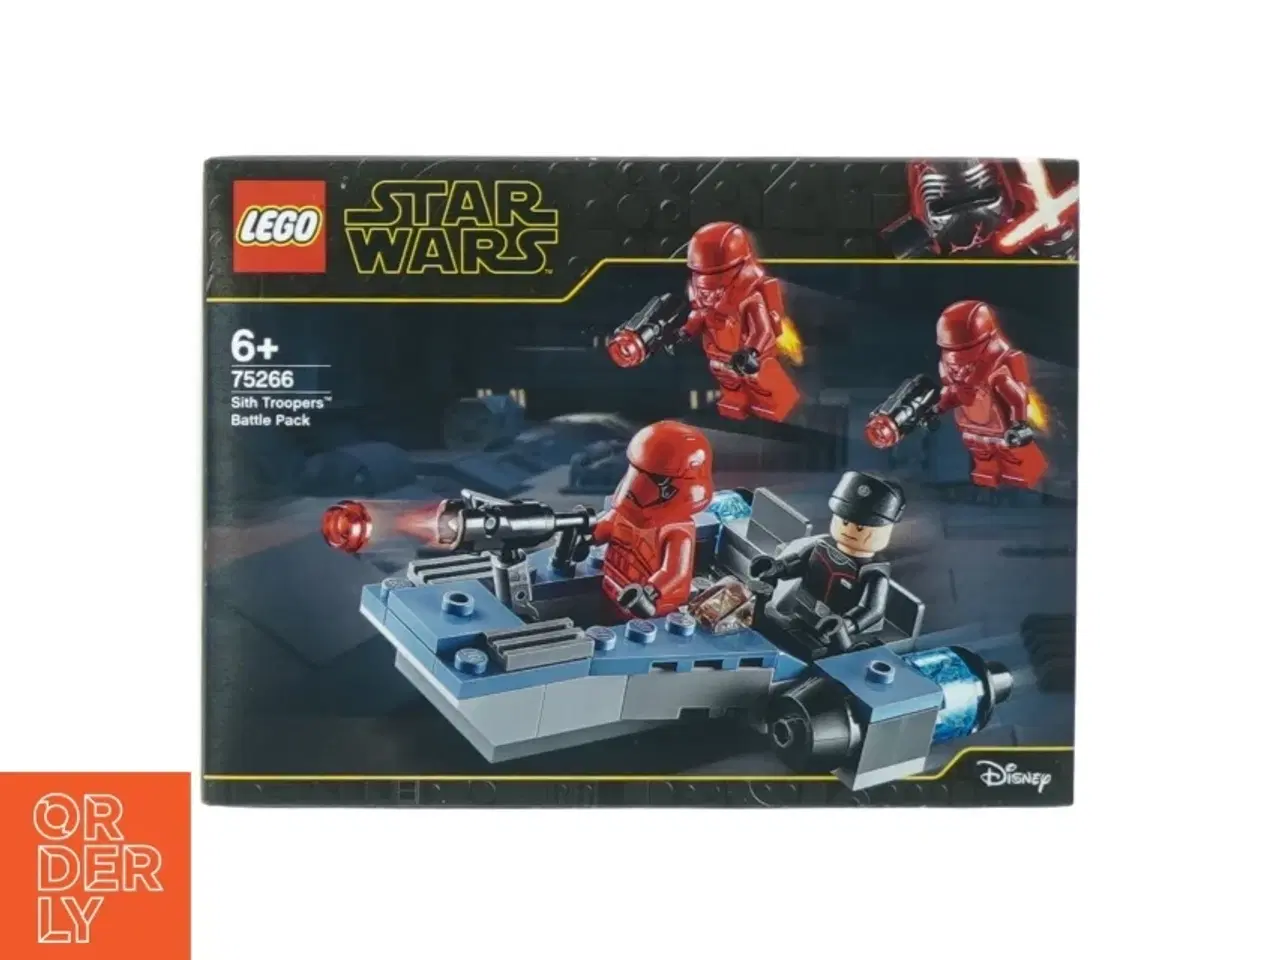 Billede 3 - Star Wars lego model 75266 fra Lego (str. 19 x 14 cm)